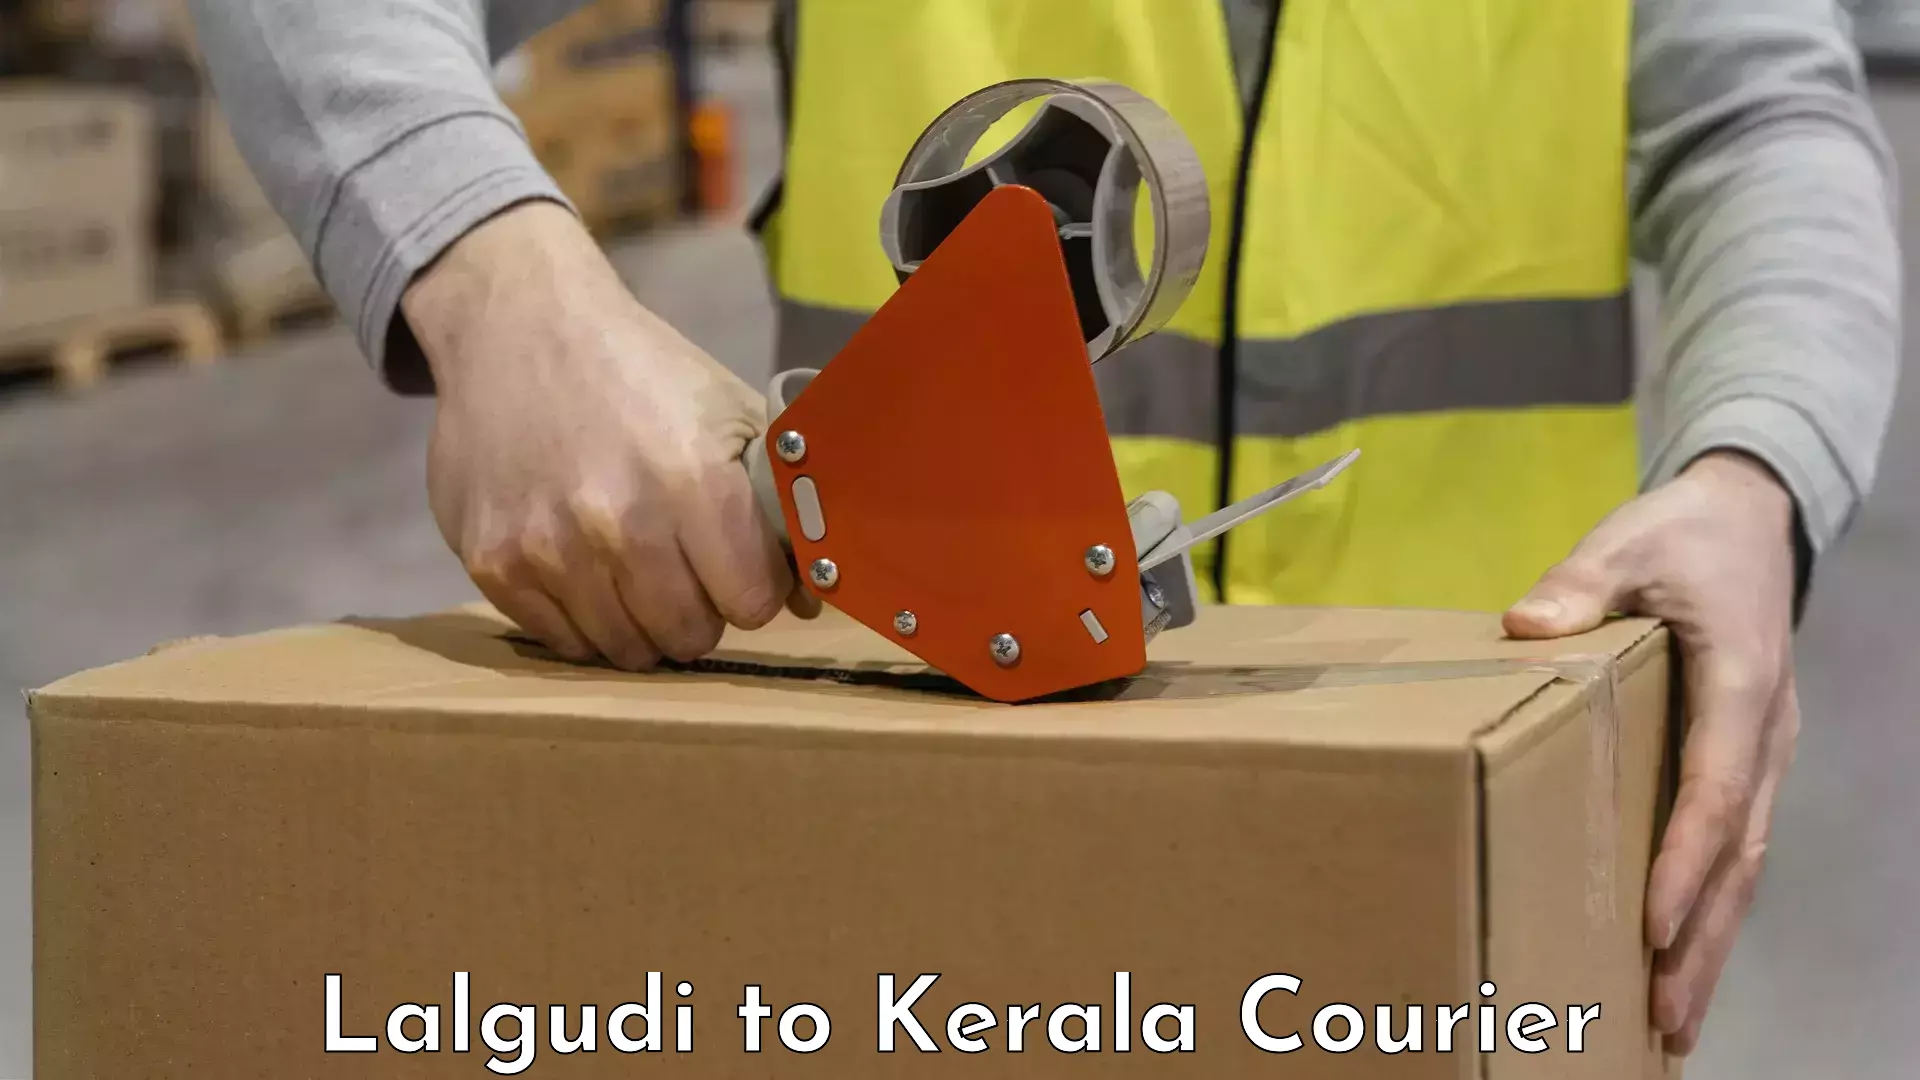 Baggage transport management Lalgudi to Kerala